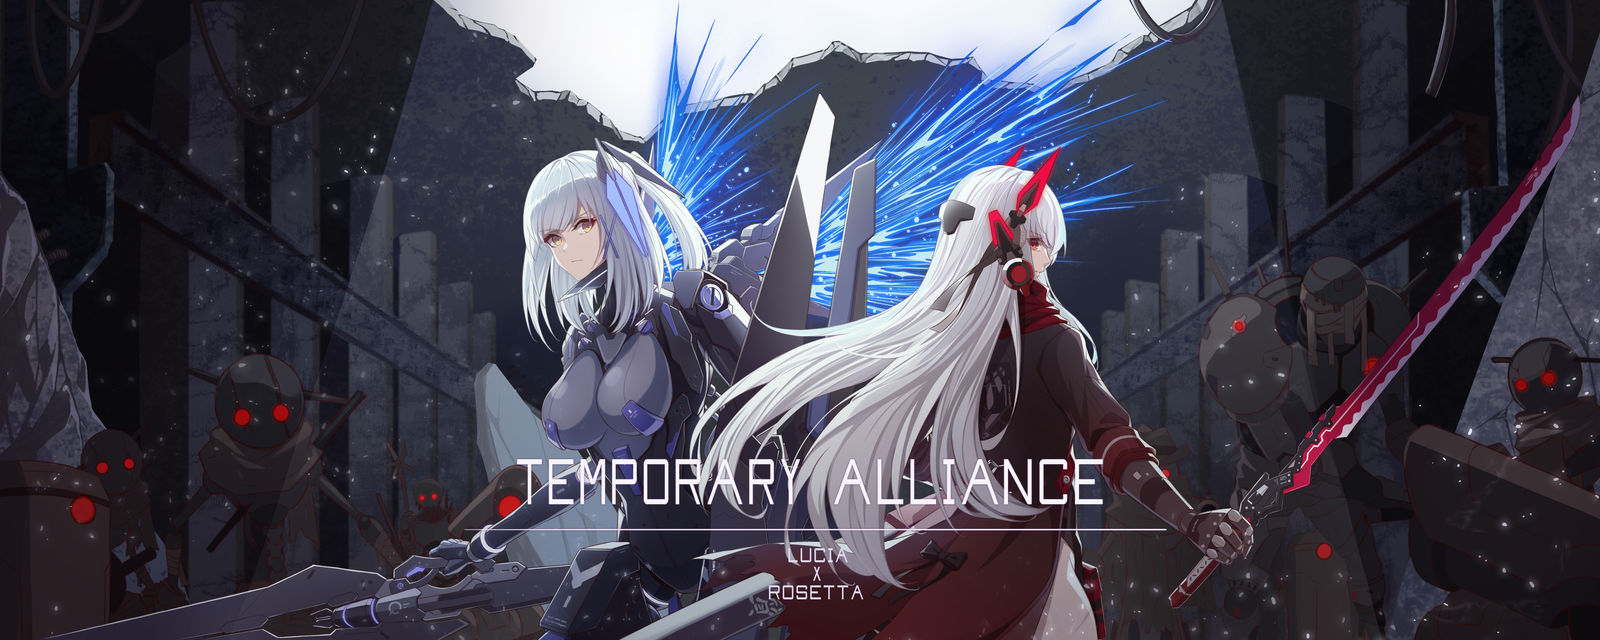 Temporary Alliance